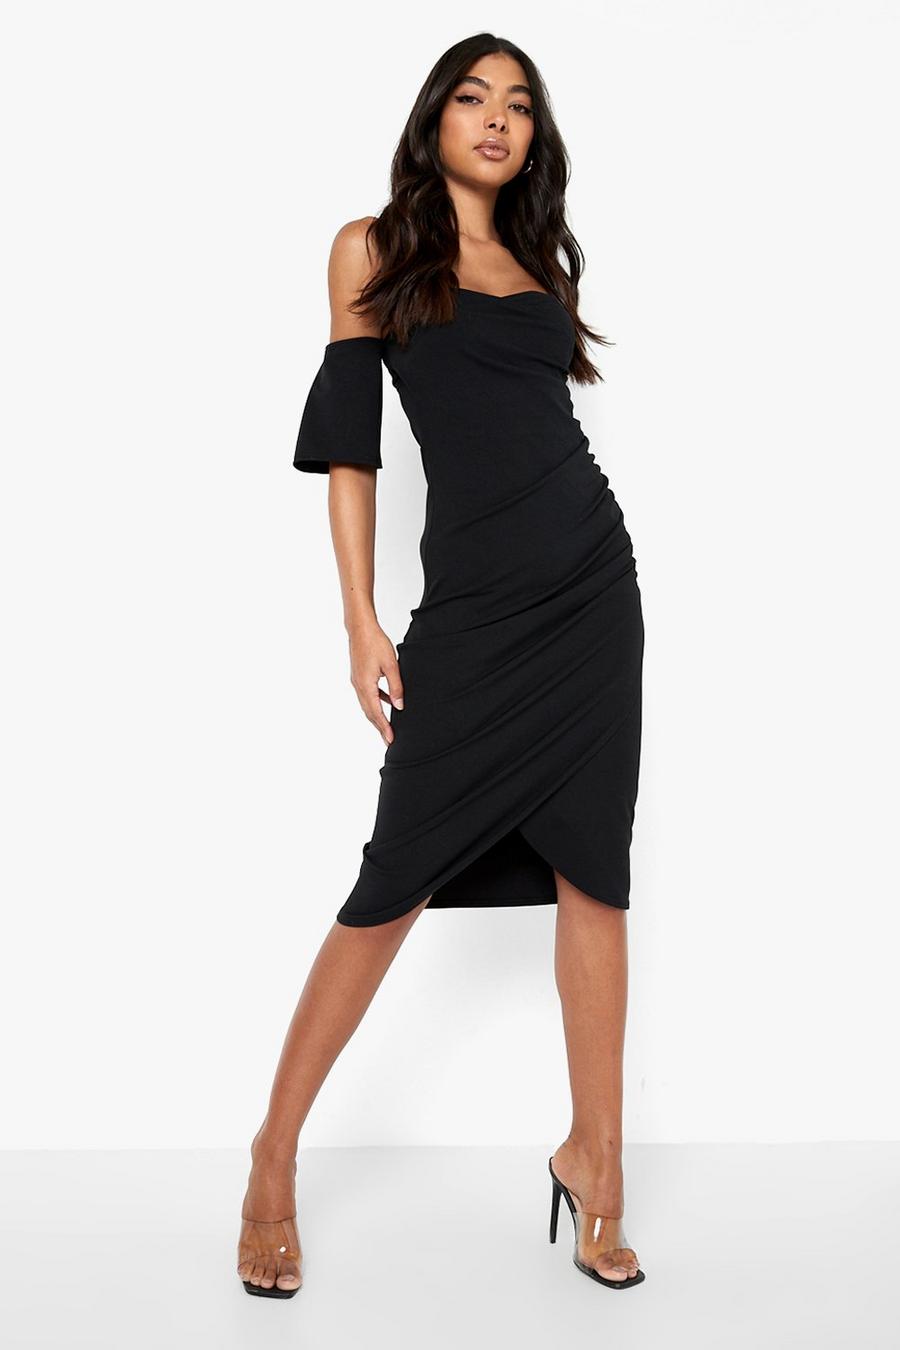 שחור שמלת מידי מבד ממוחזר עם כתפיים חשופות לנשים גבוהות image number 1